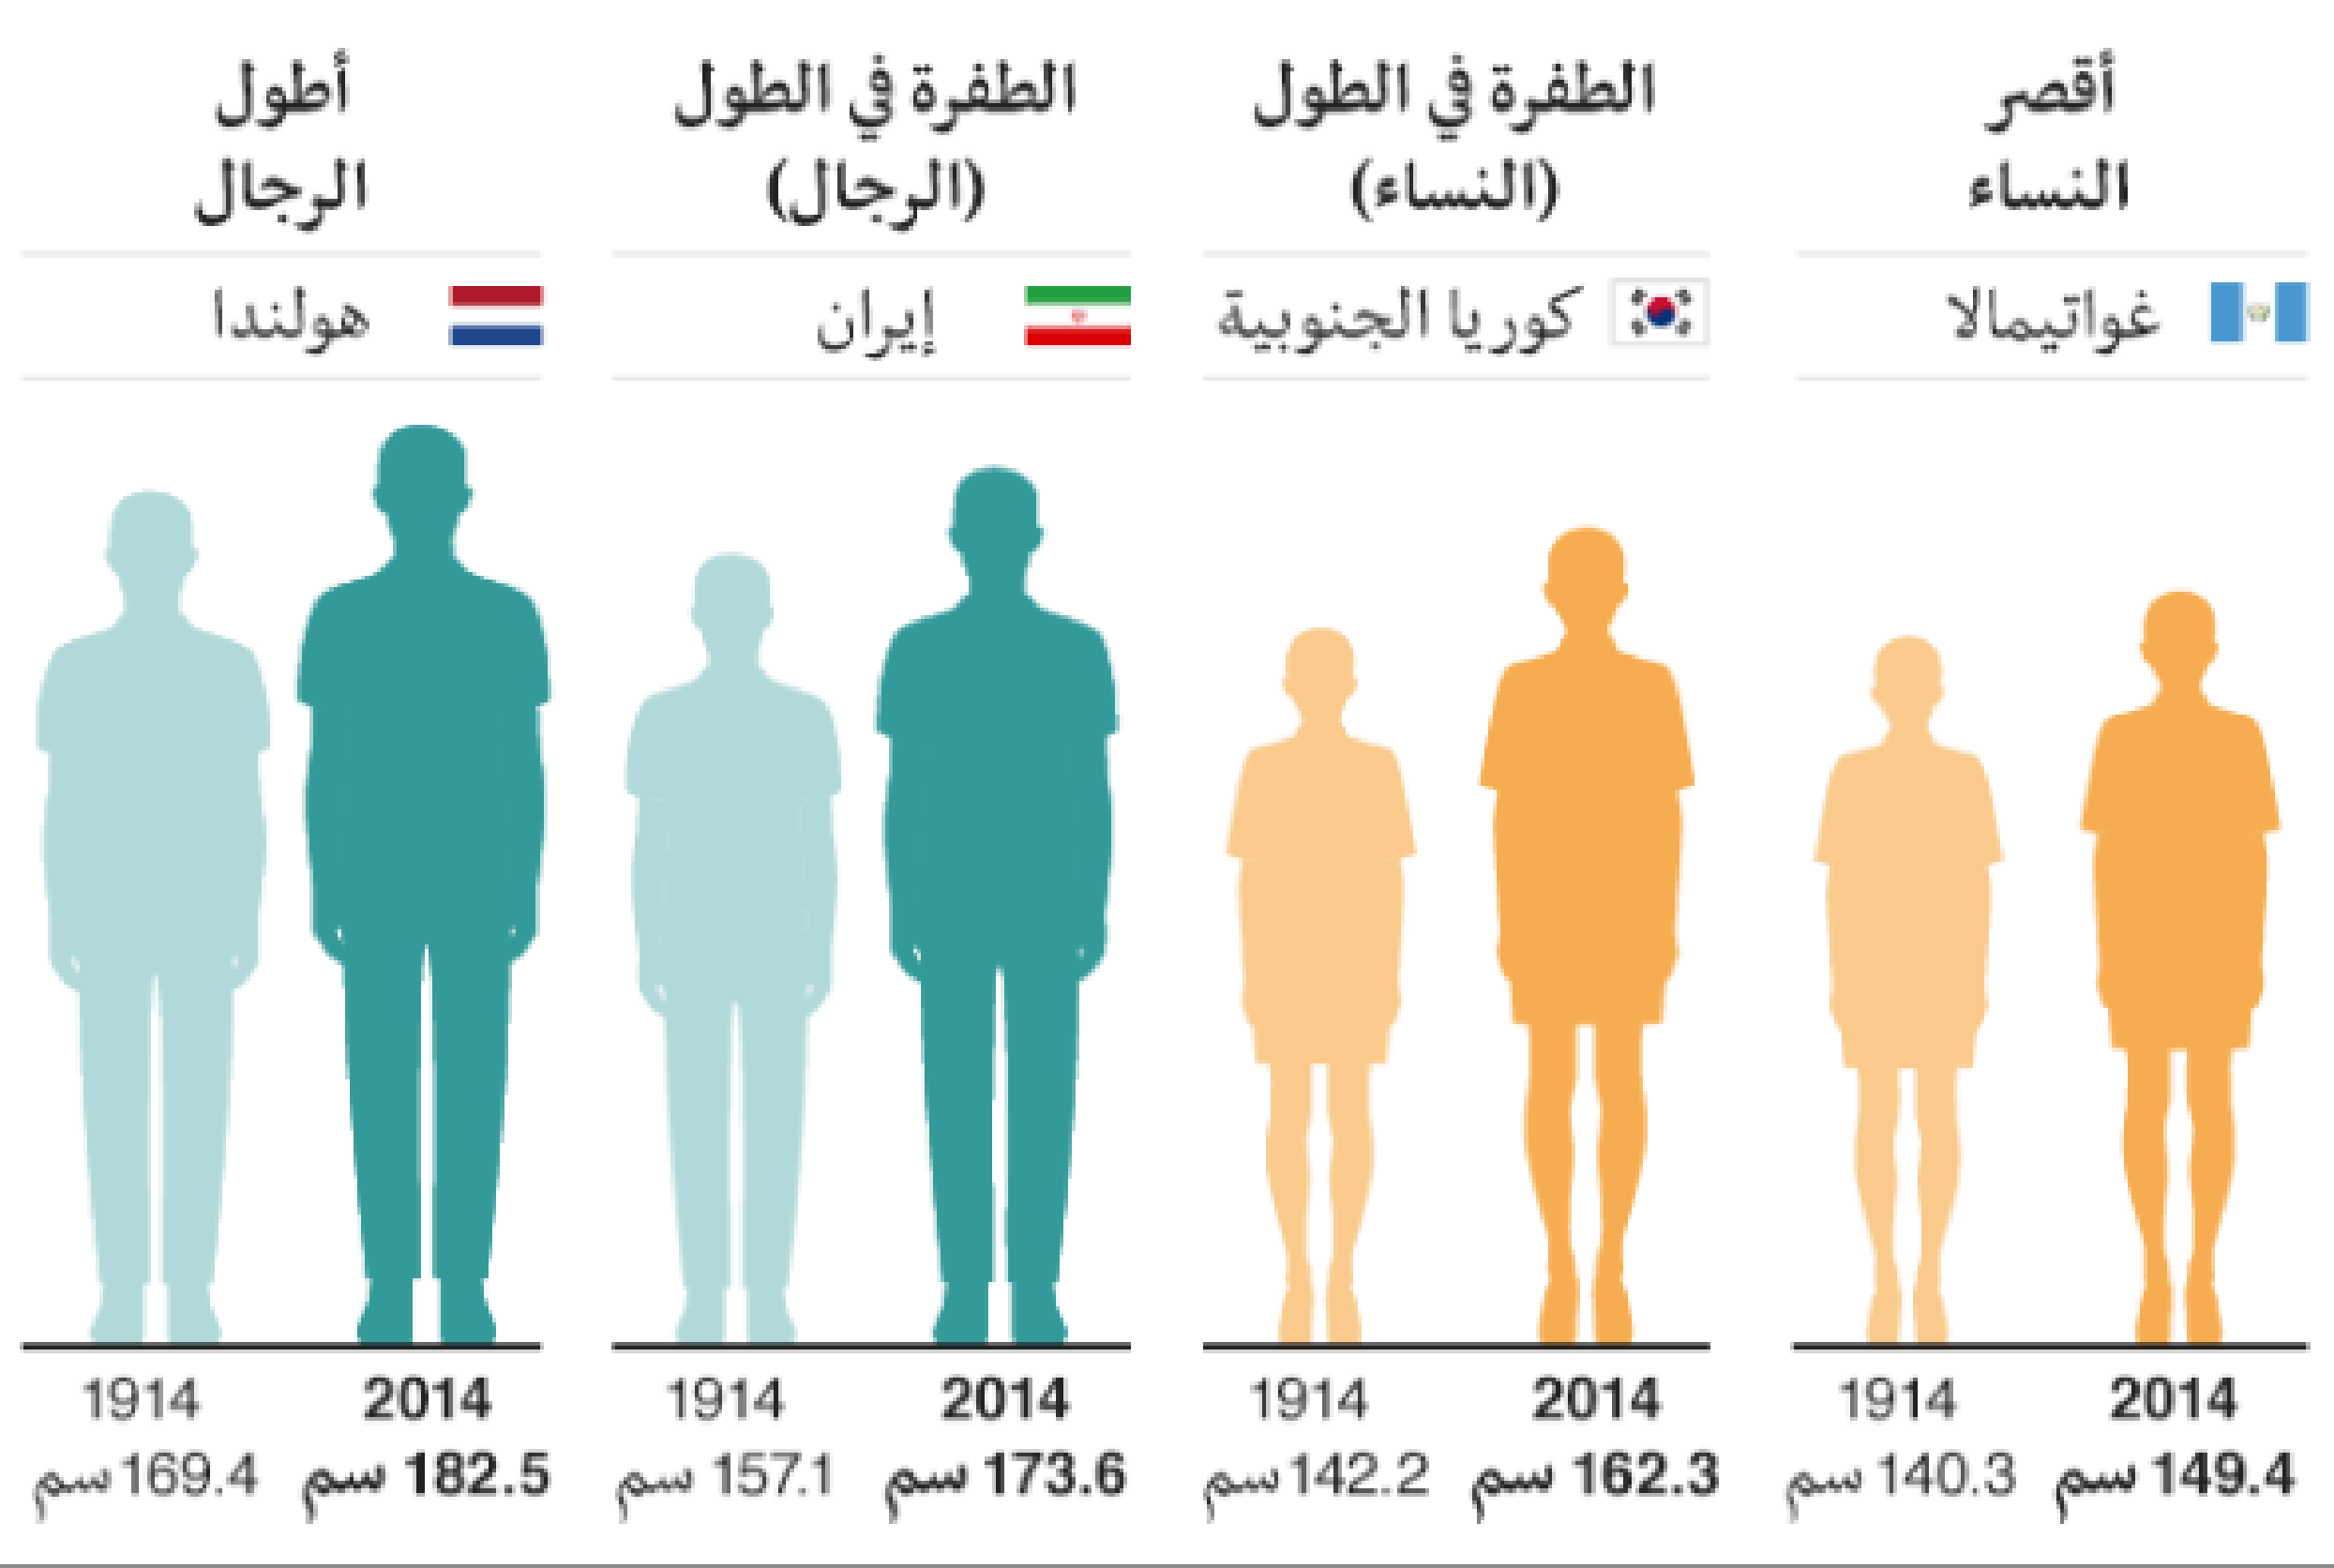 الطول المثالي للرجل والمرأة حسب العمر, الطول والوزن المثالى للرجل والمرأة حسب العمر